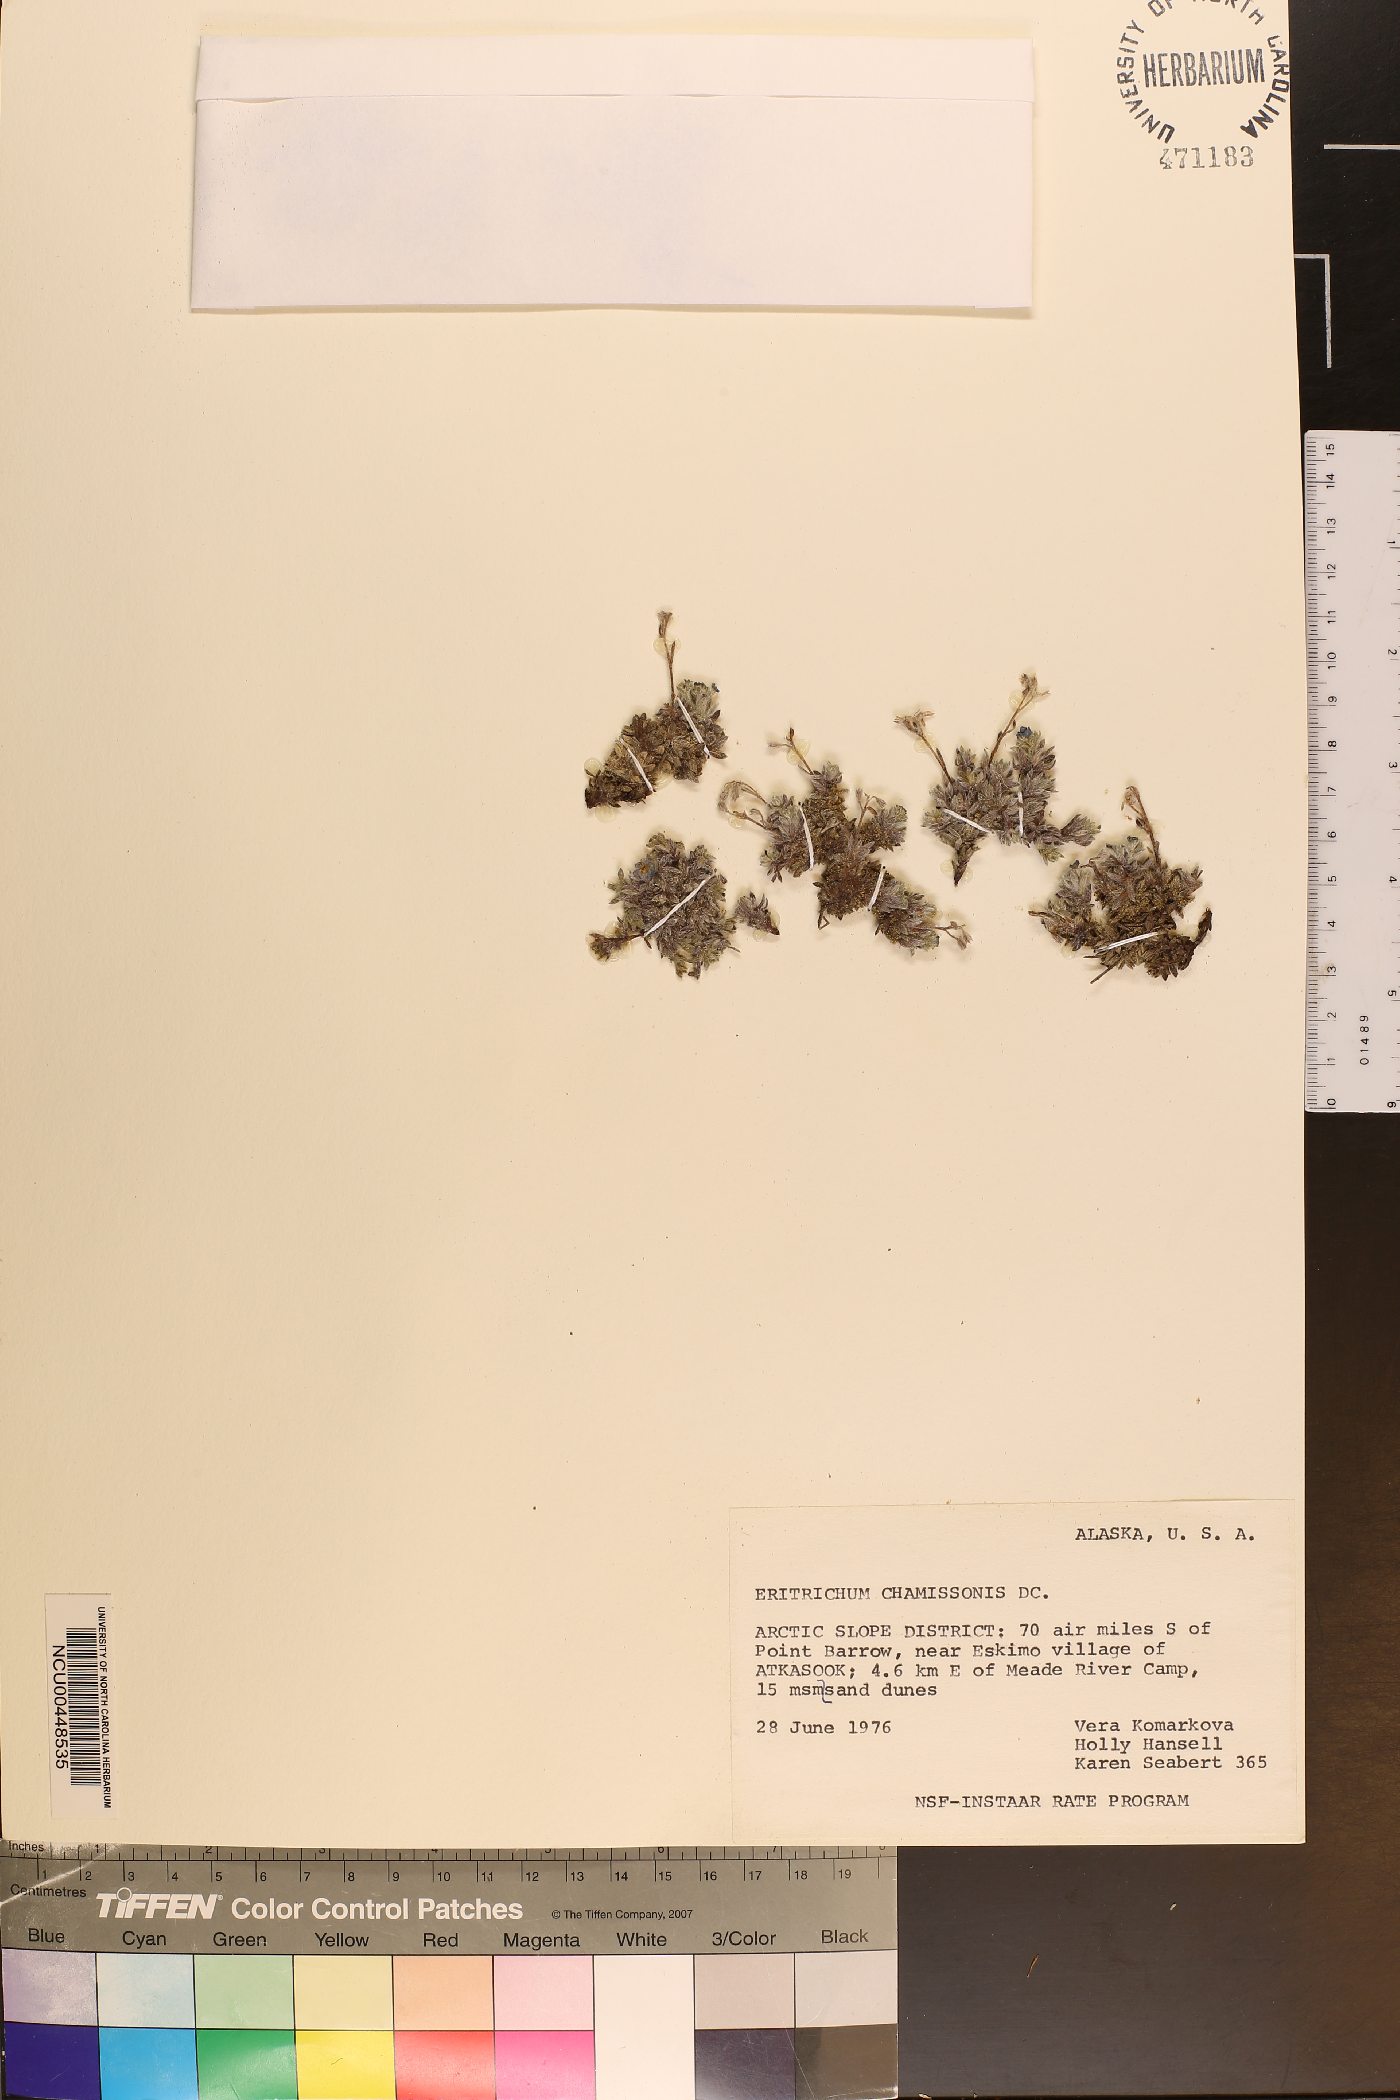 Eritrichium chamissonis image